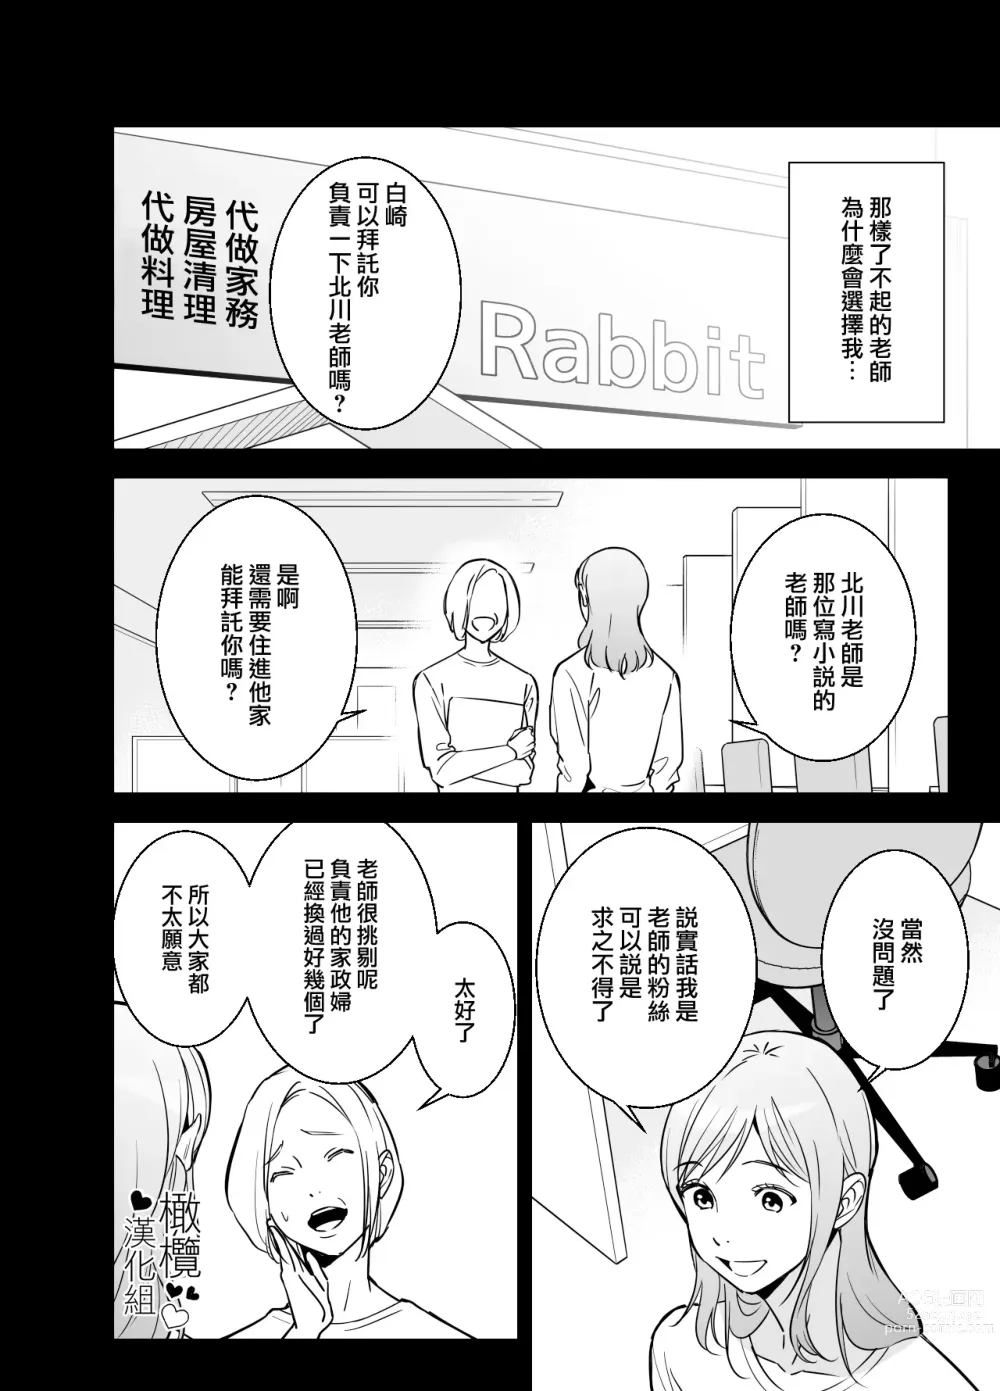 Page 5 of doujinshi 处男小说家和家政妇小姐